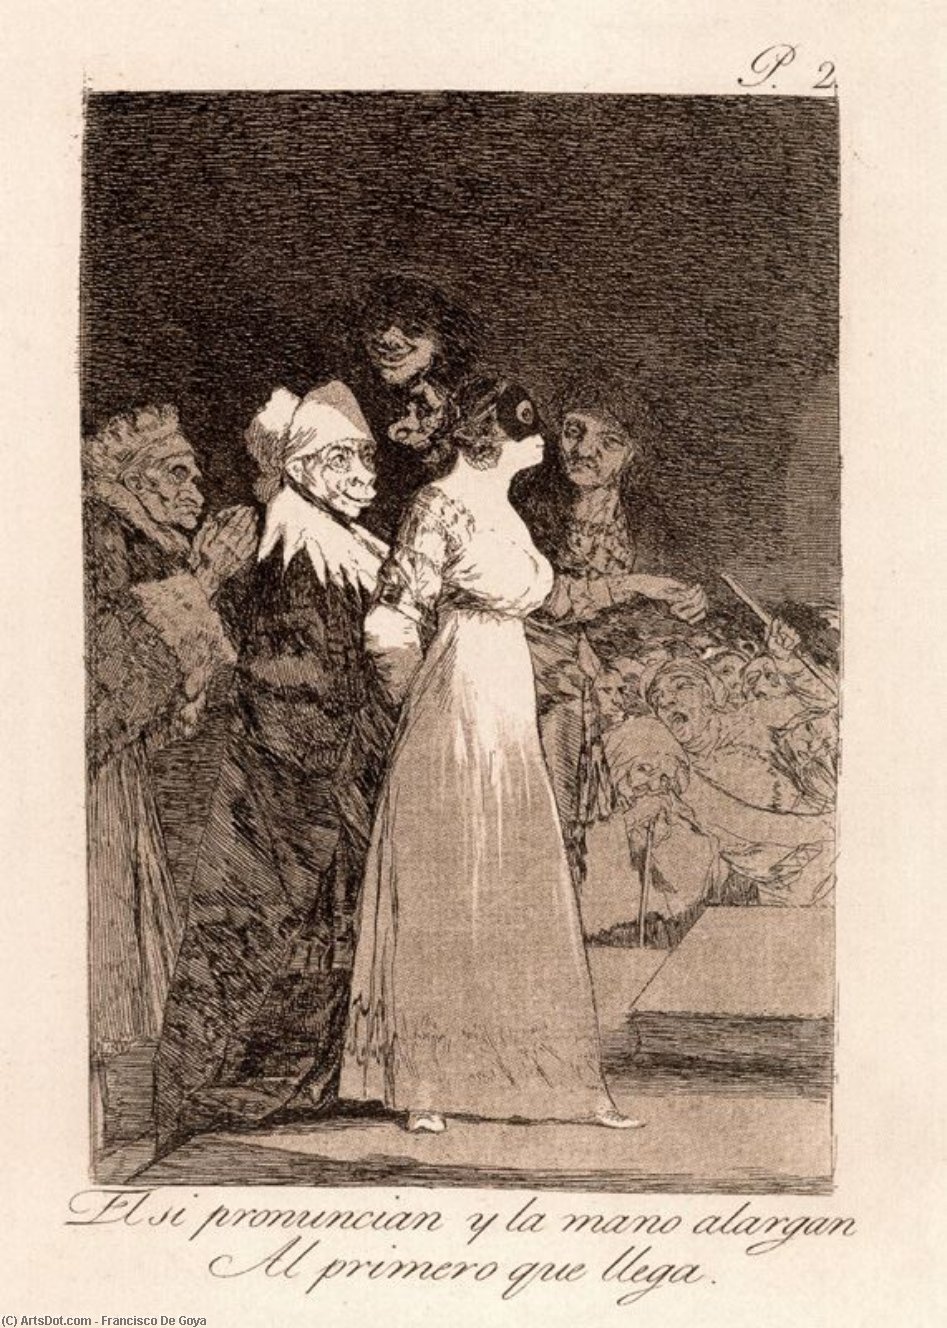 WikiOO.org - Encyclopedia of Fine Arts - Maleri, Artwork Francisco De Goya - El si pronuncian y la mano alargan Al primero que llegan